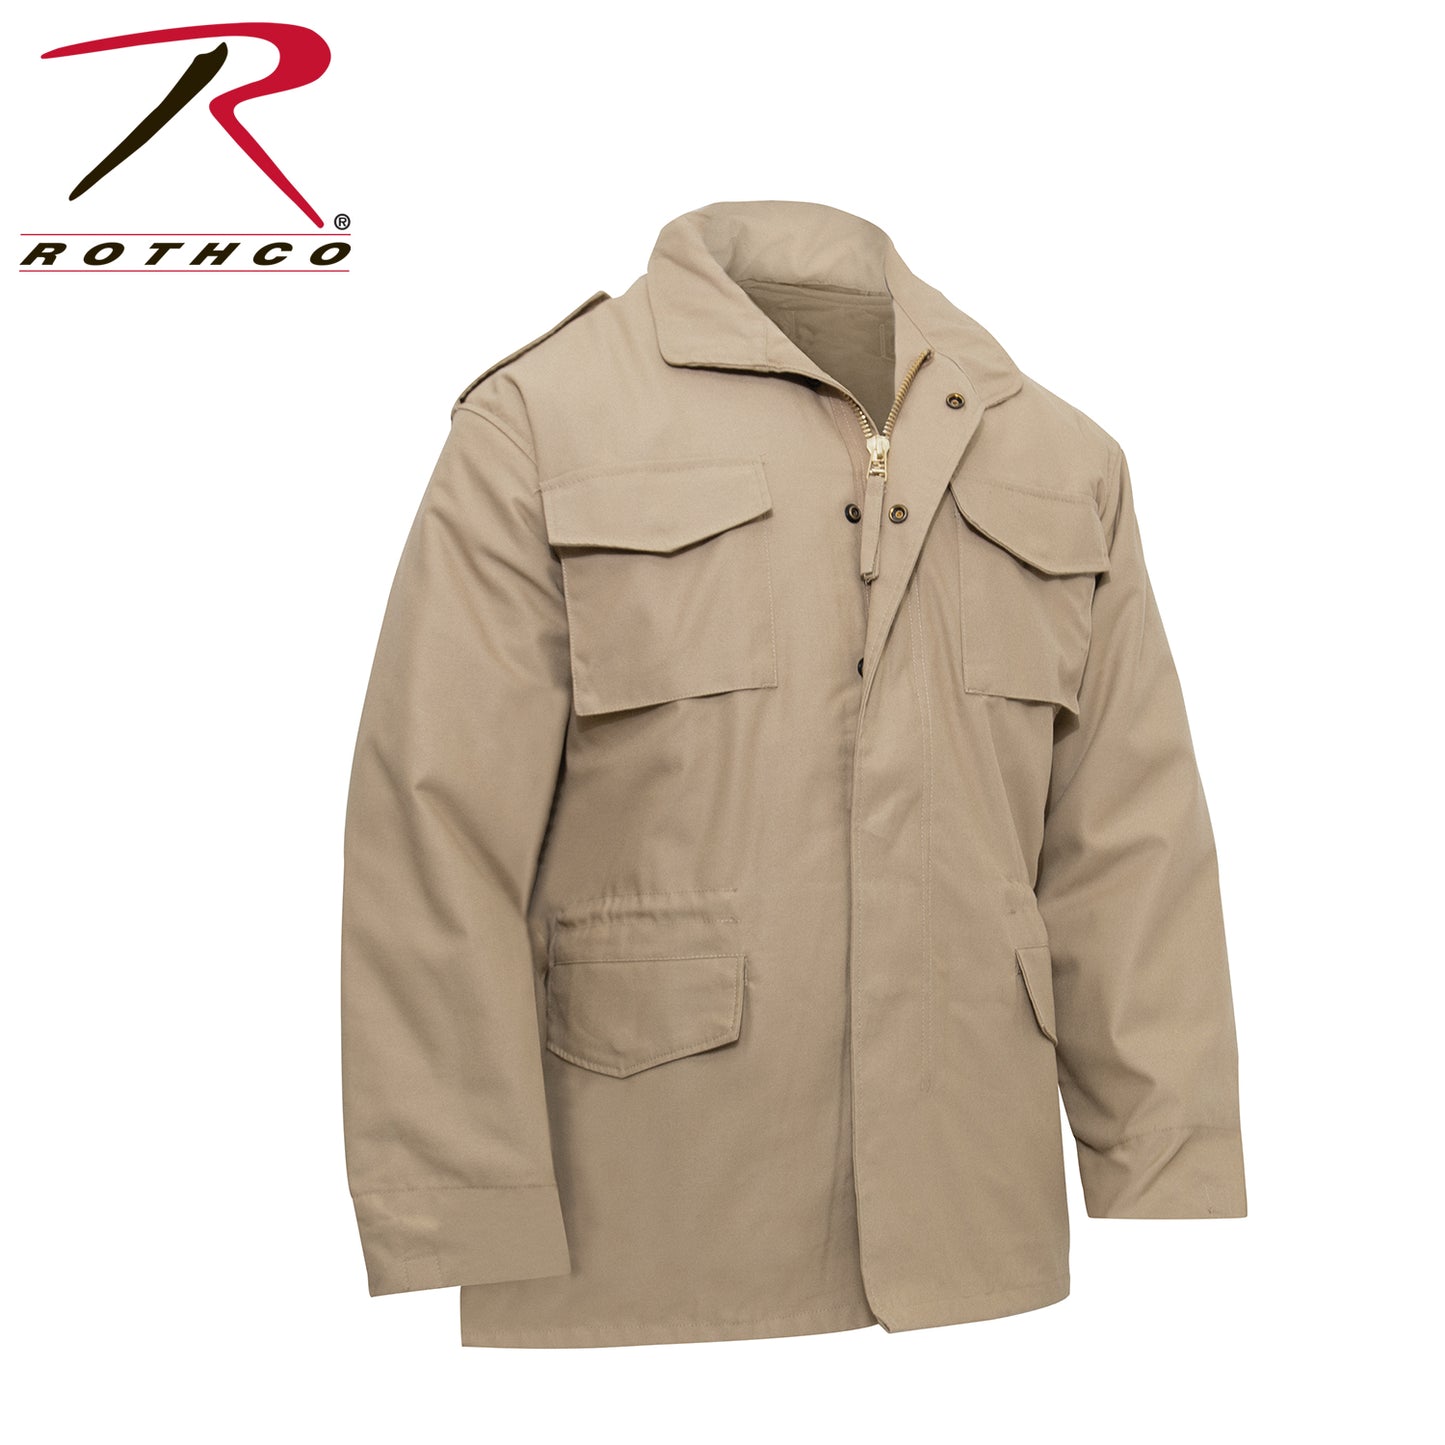 Rothco M-65 Field Jacket